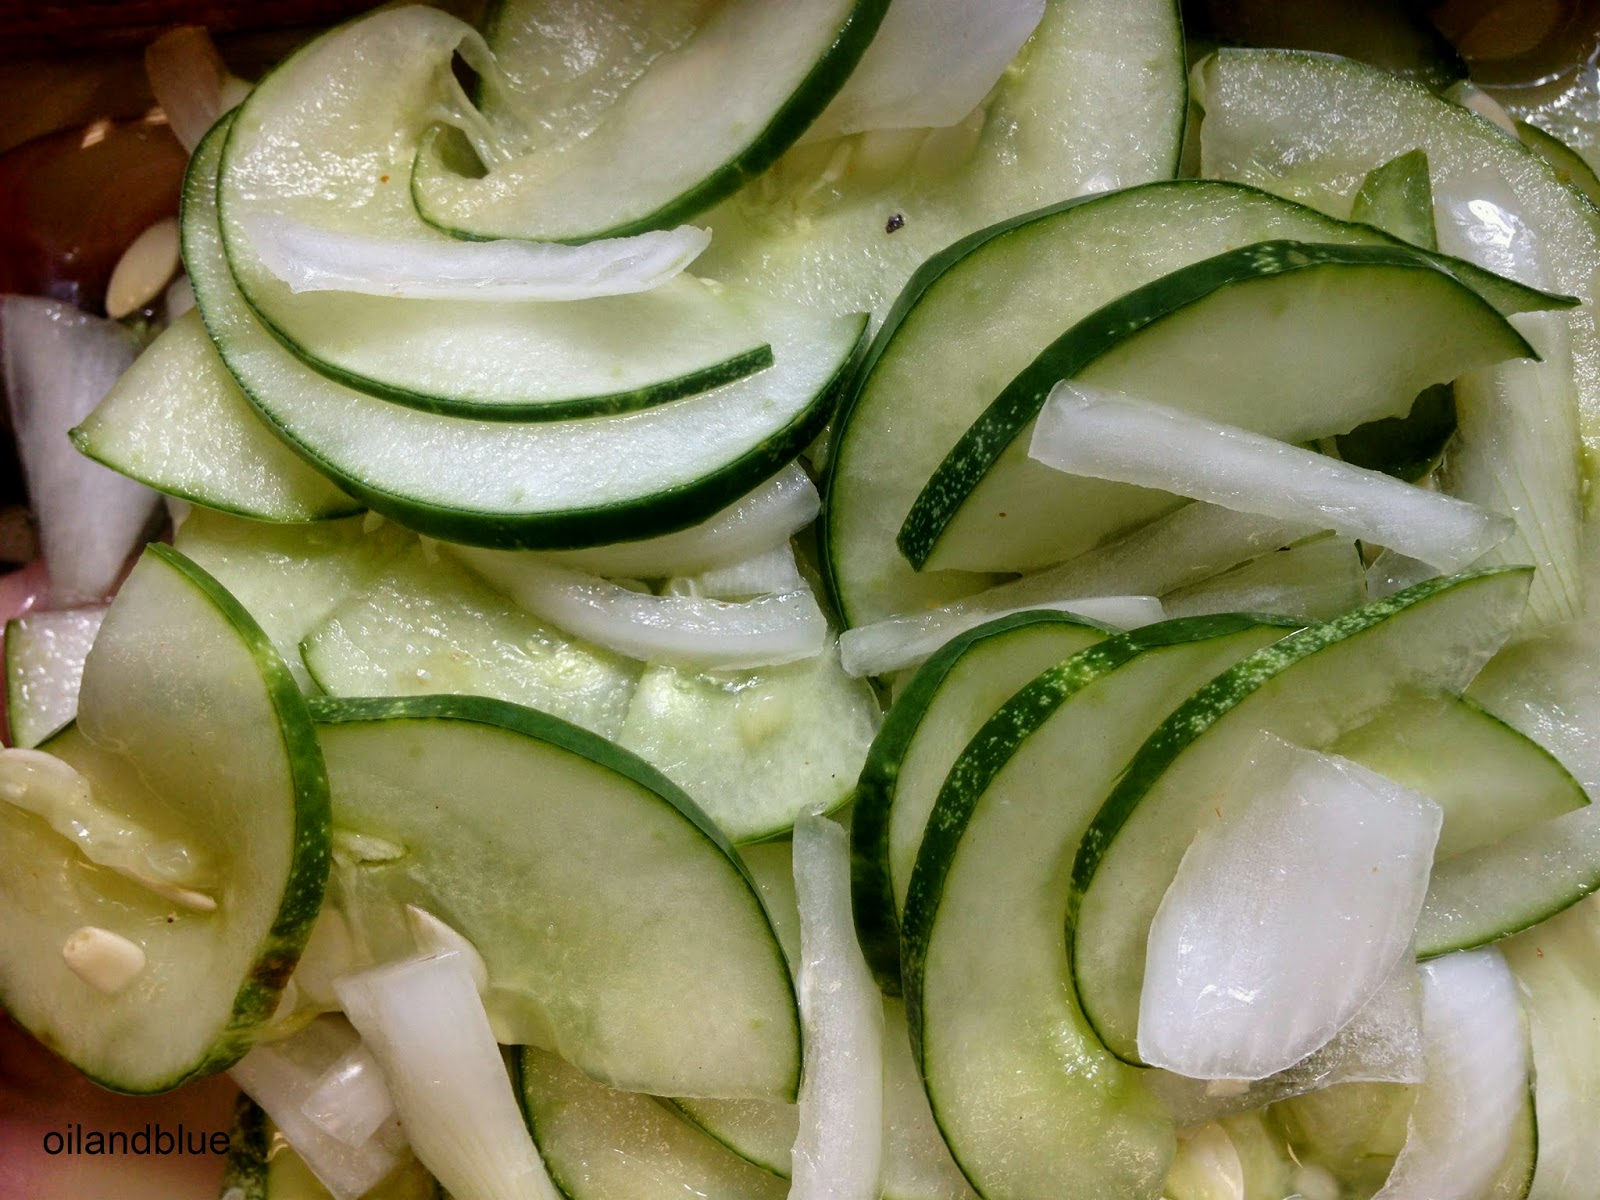 http://oilandblue.blogspot.com/2014/08/fresh-fast-cucumber-garlic-salad.html